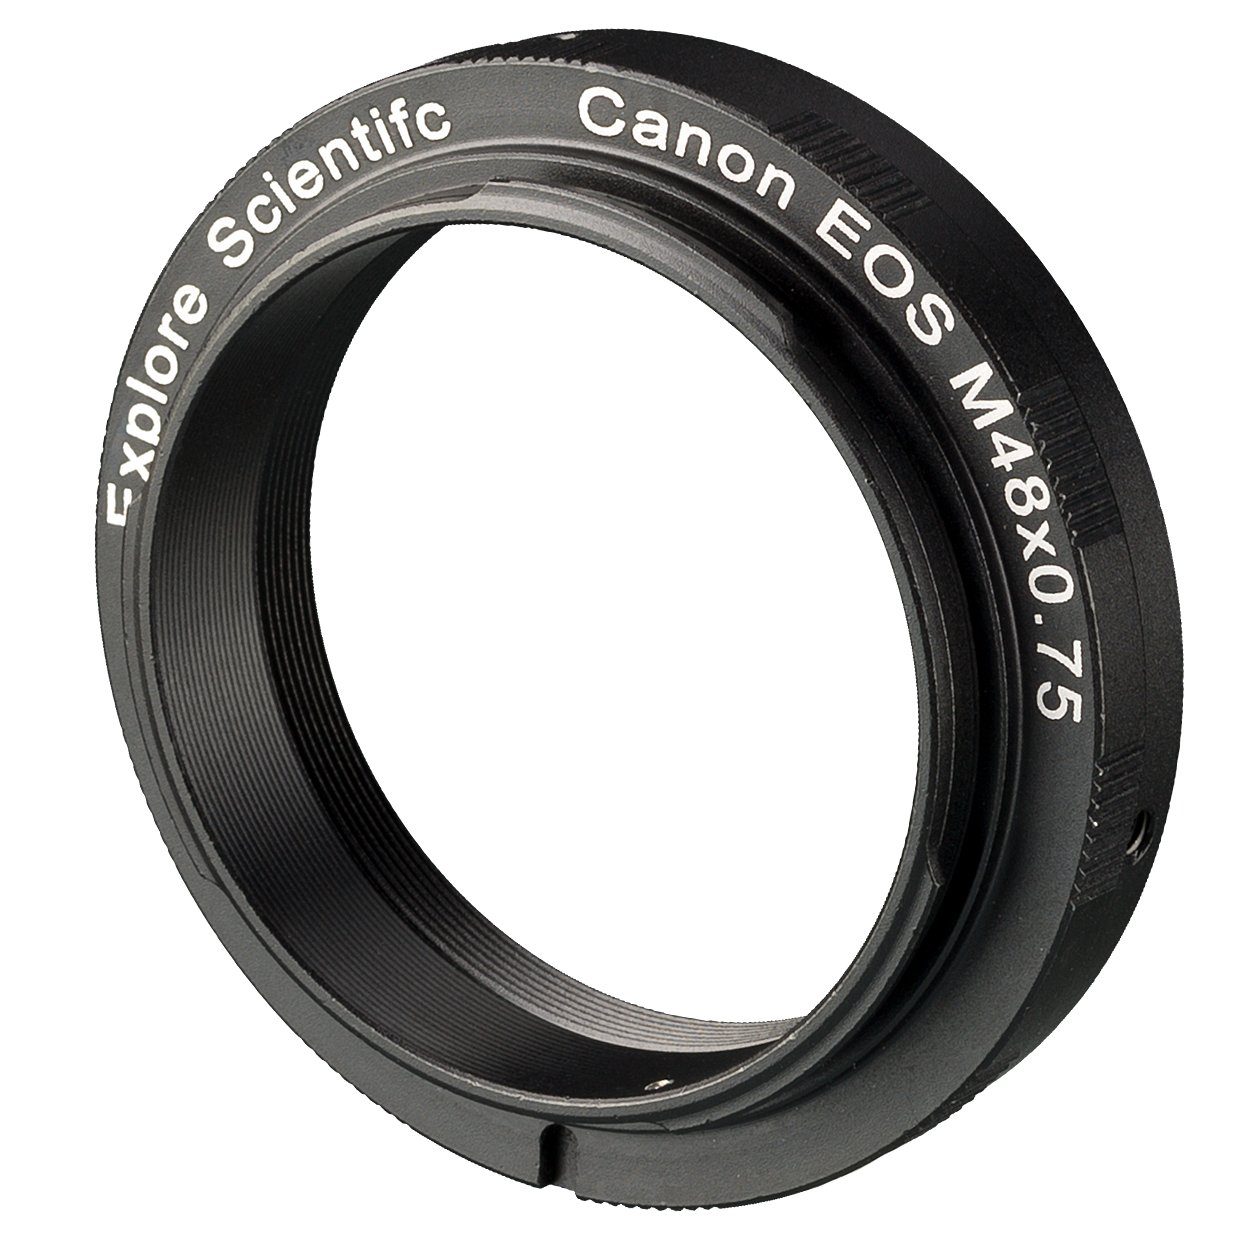 EXPLORE SCIENTIFIC Kamera-Ring M48x0.75 für Canon EOS Objektiv-Adapter